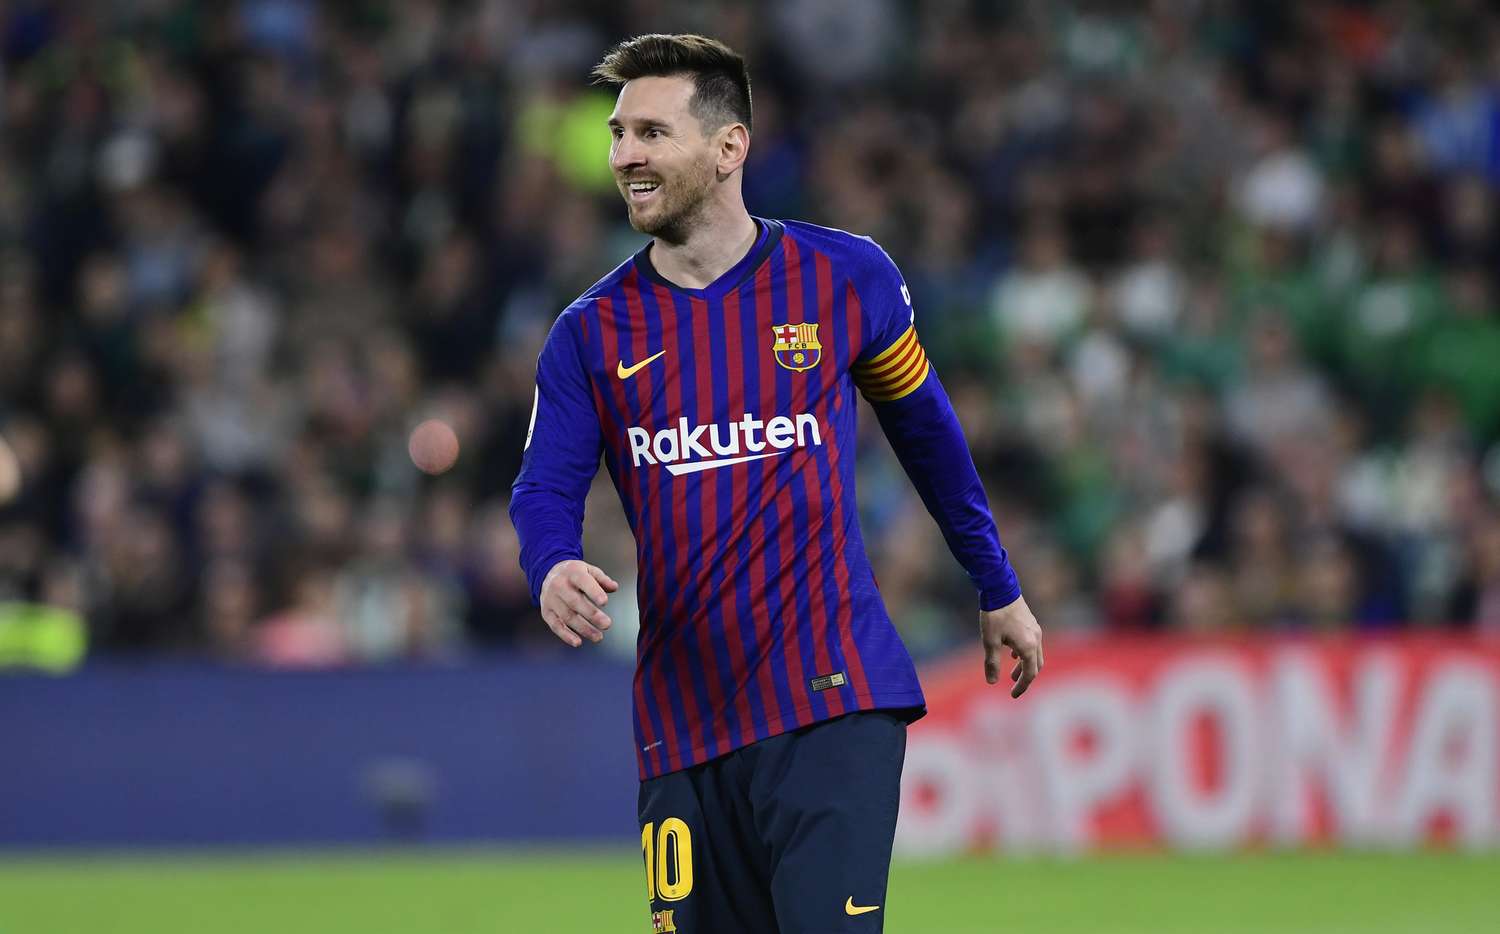 Video: mirá cómo entrena Lionel Messi para recuperarse de su lesión